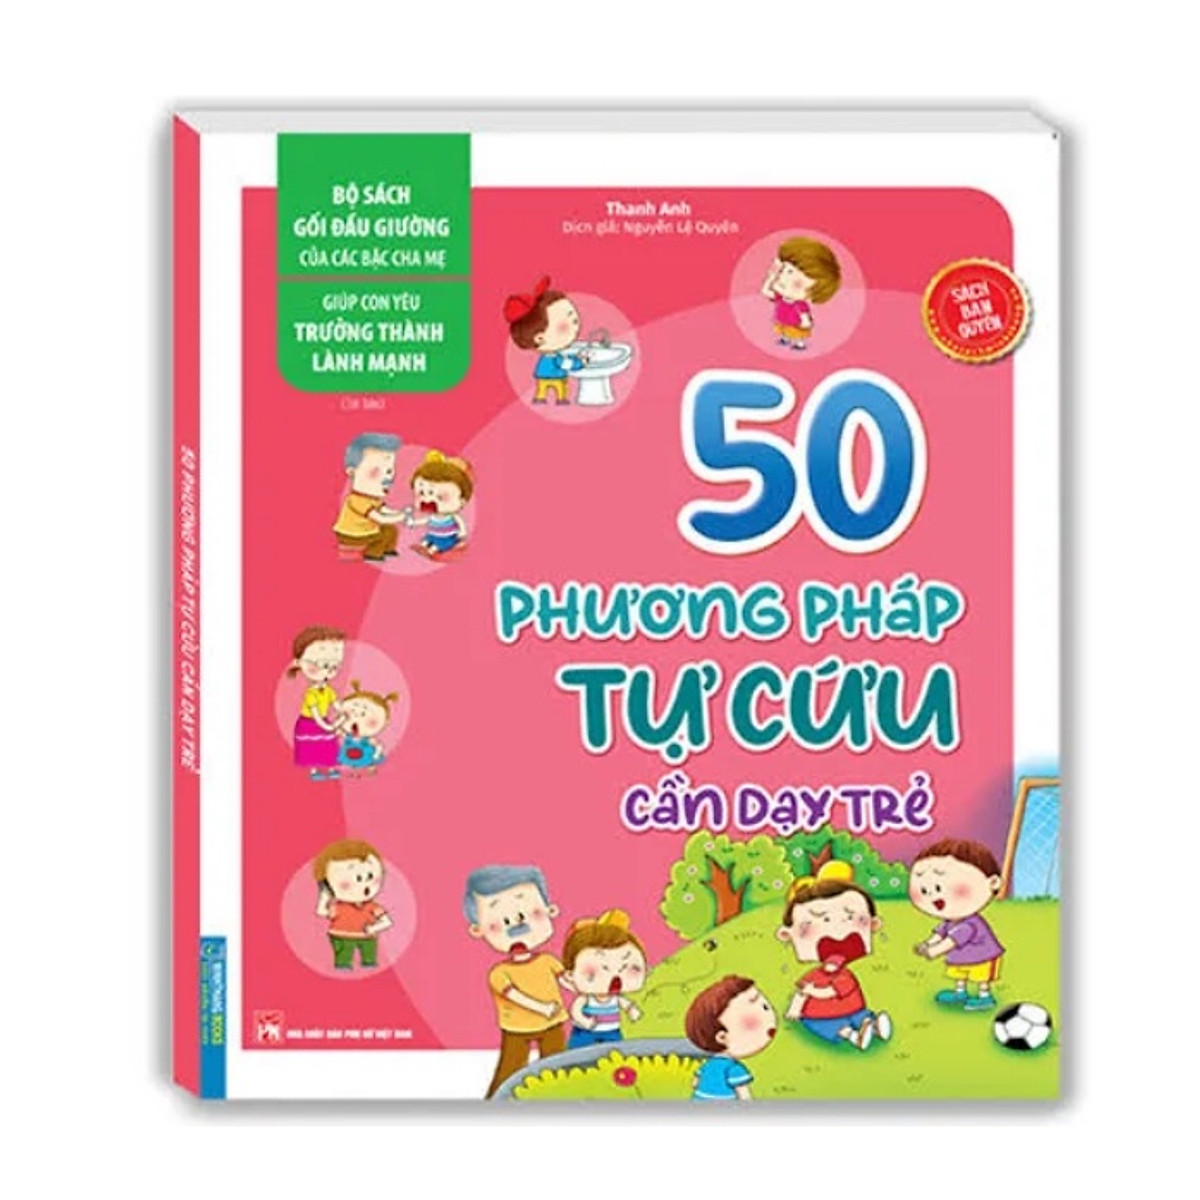 Sách - Bộ sách gối đầu giường của các bậc cha mẹ - Giúp con yêu trưởng thành lành mạnh - 50 phương pháp tự cứu cần dạy trẻ